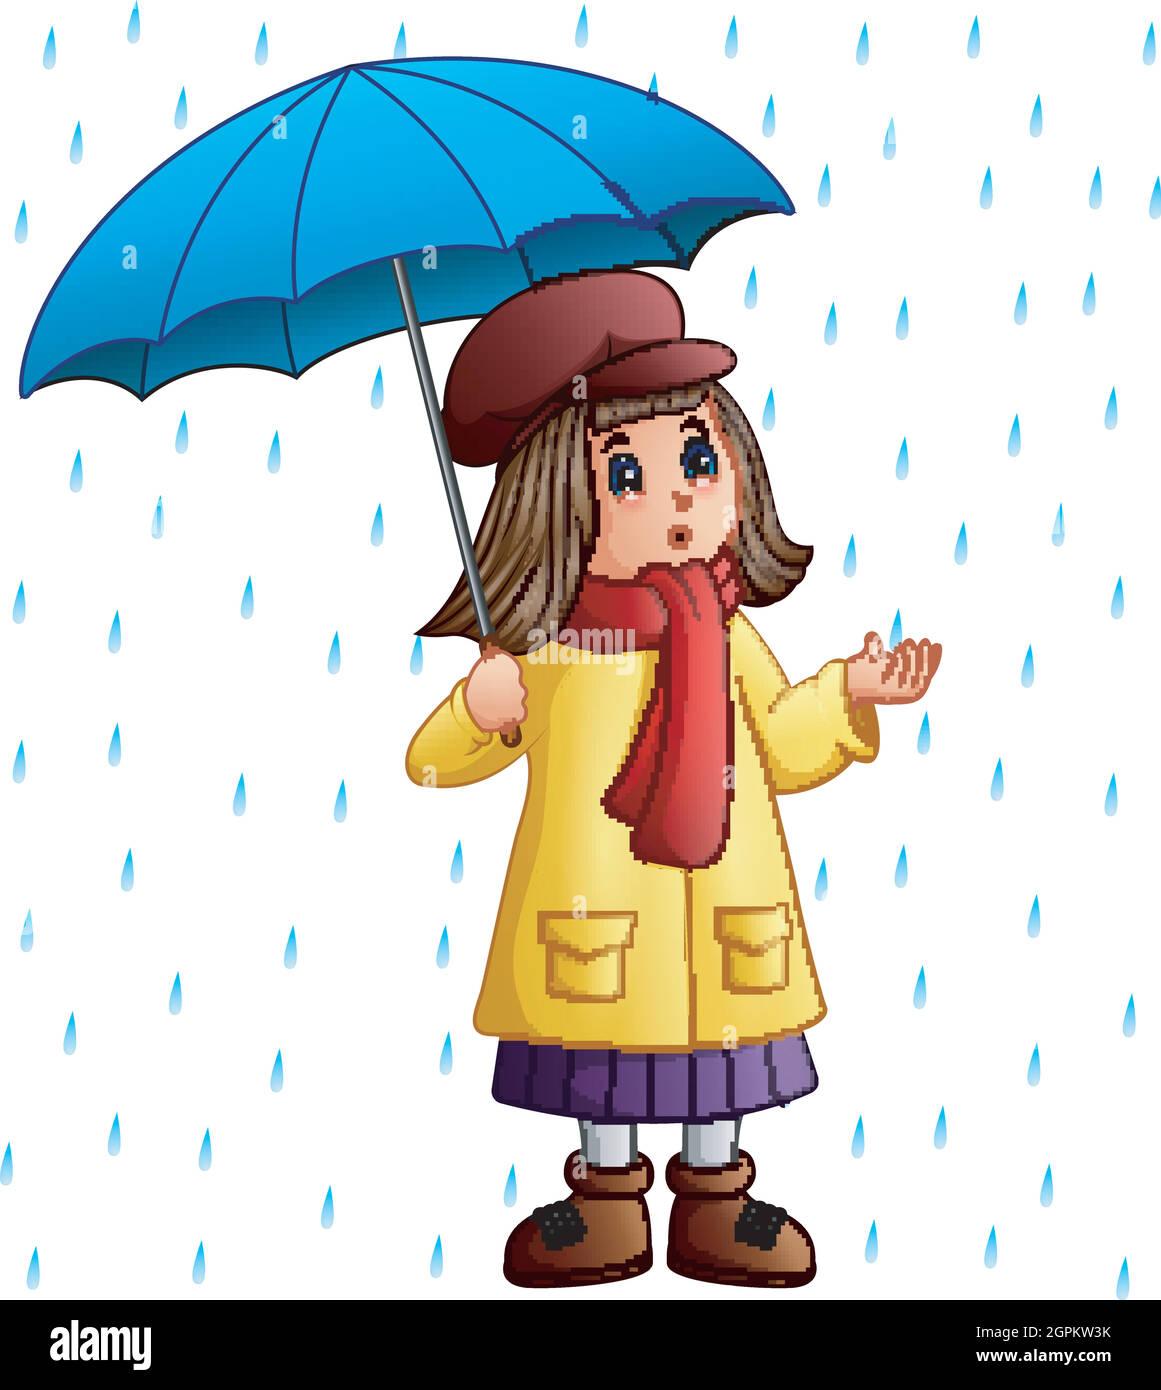 Petite fille de dessin animé avec parapluie debout sous les gouttes de pluie Illustration de Vecteur